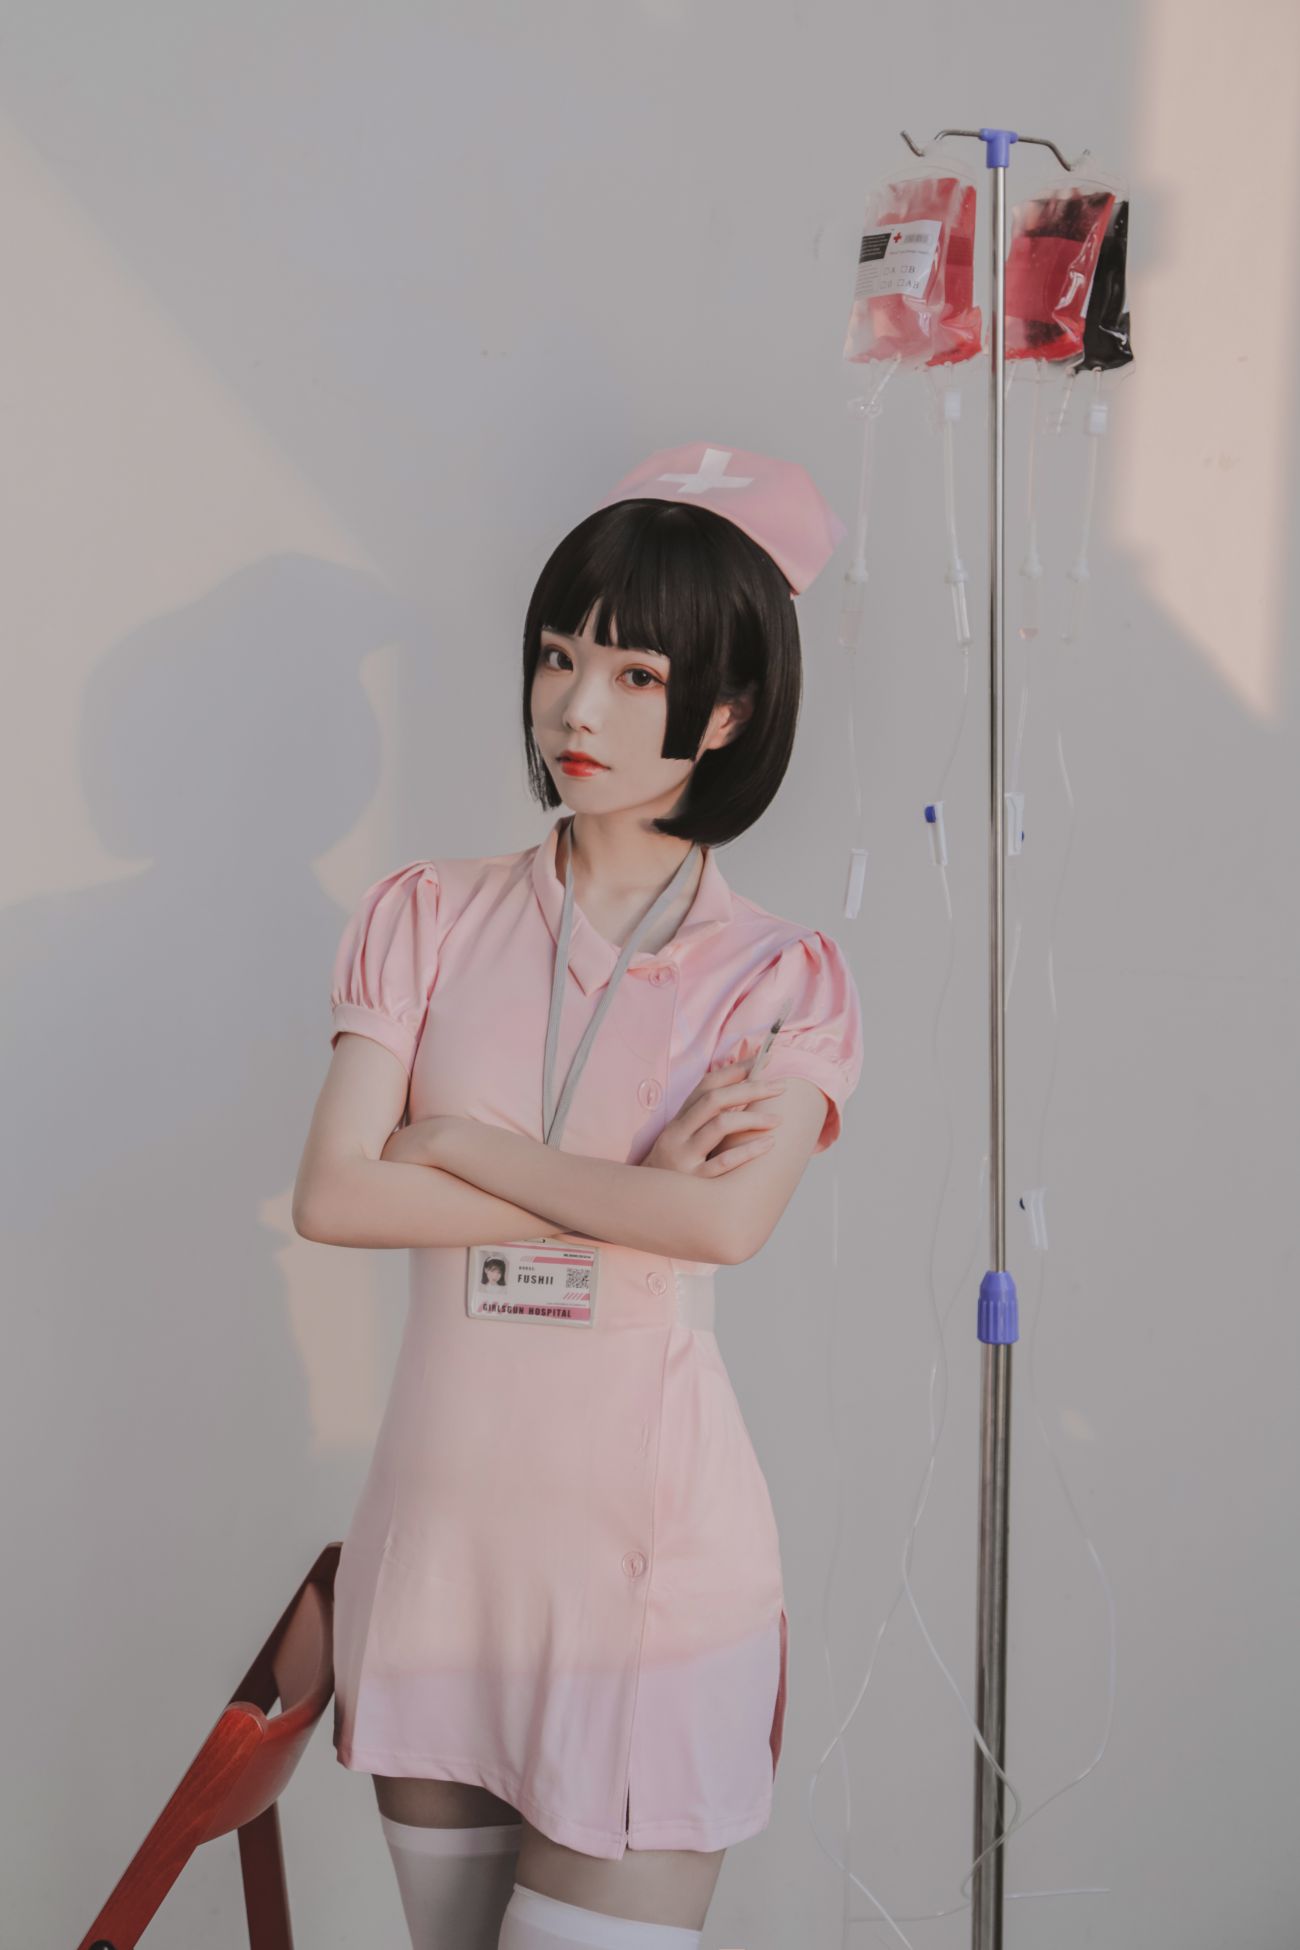 微博美少女Fushii海堂Cosplay性感写真护士 (31)